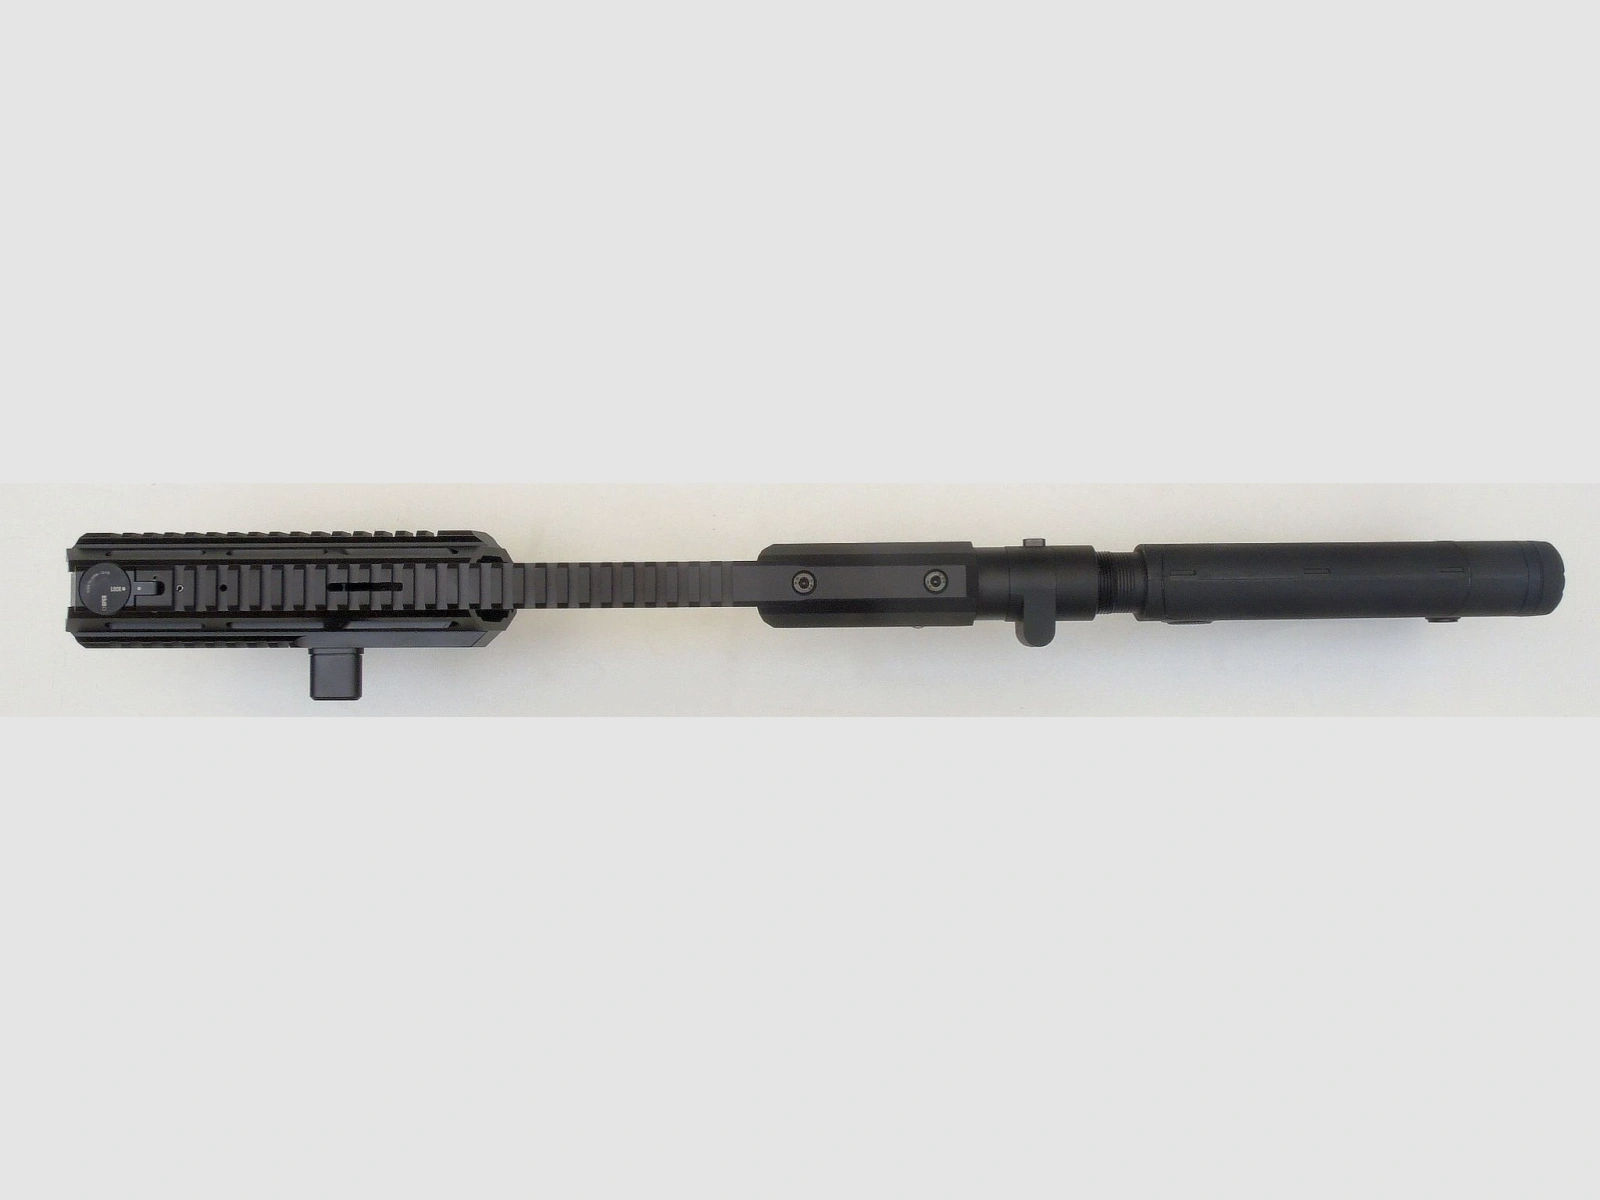 Triarii RTU BLK f. Glock 19/23 m. SFU - Vorführgerät